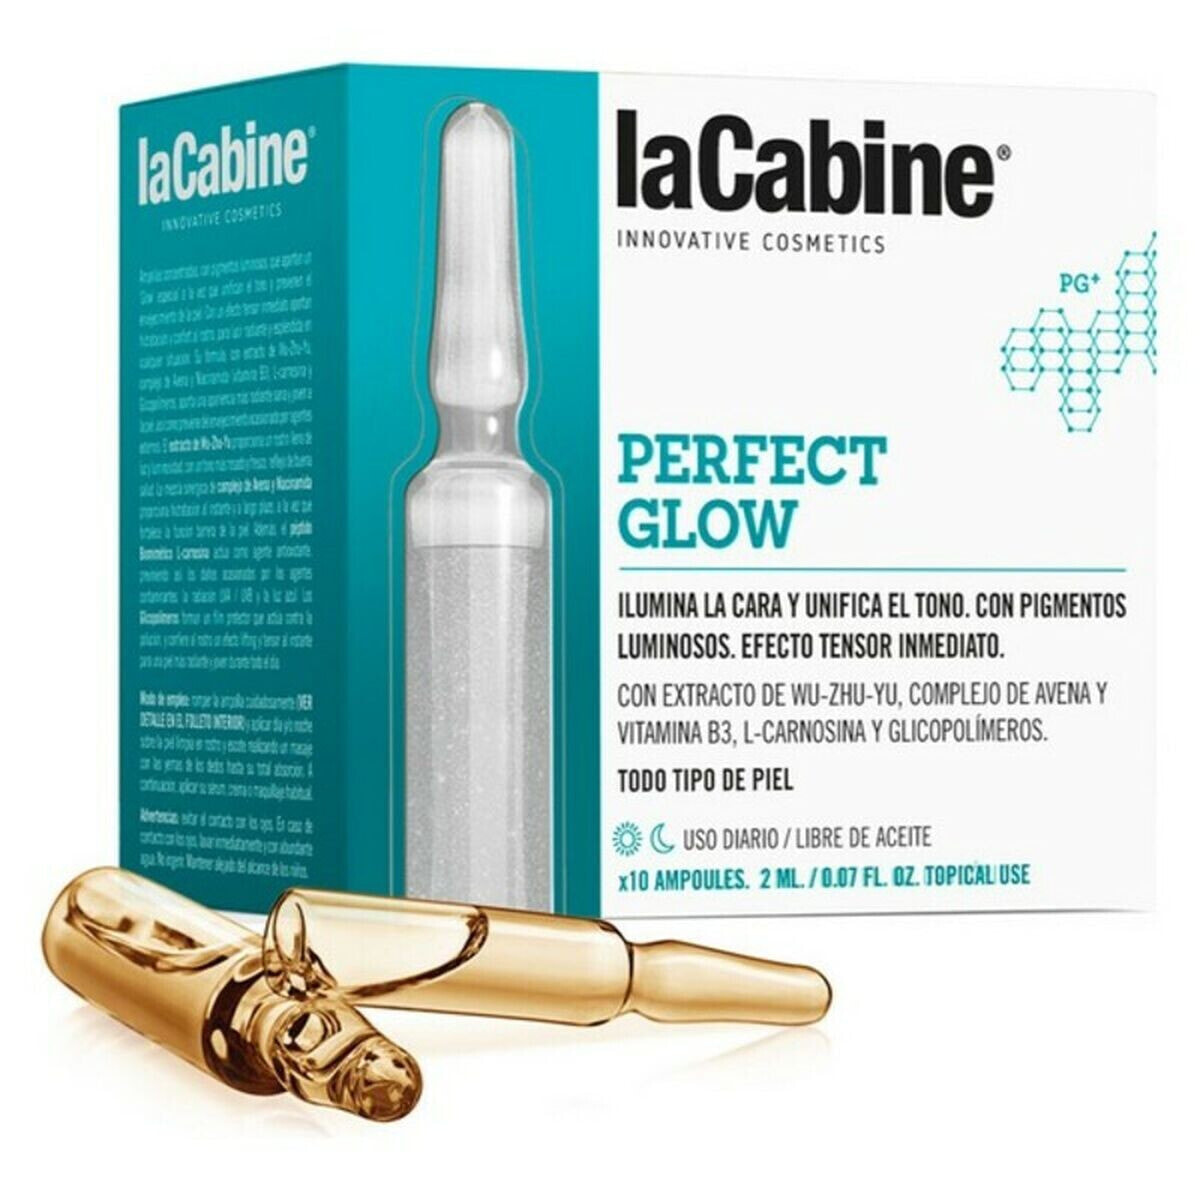 La Cabine Perfect Glow Концентрированная сыворотка в ампулах, выравнивающая тон кожи и придающая сияние 10 x 2 мл